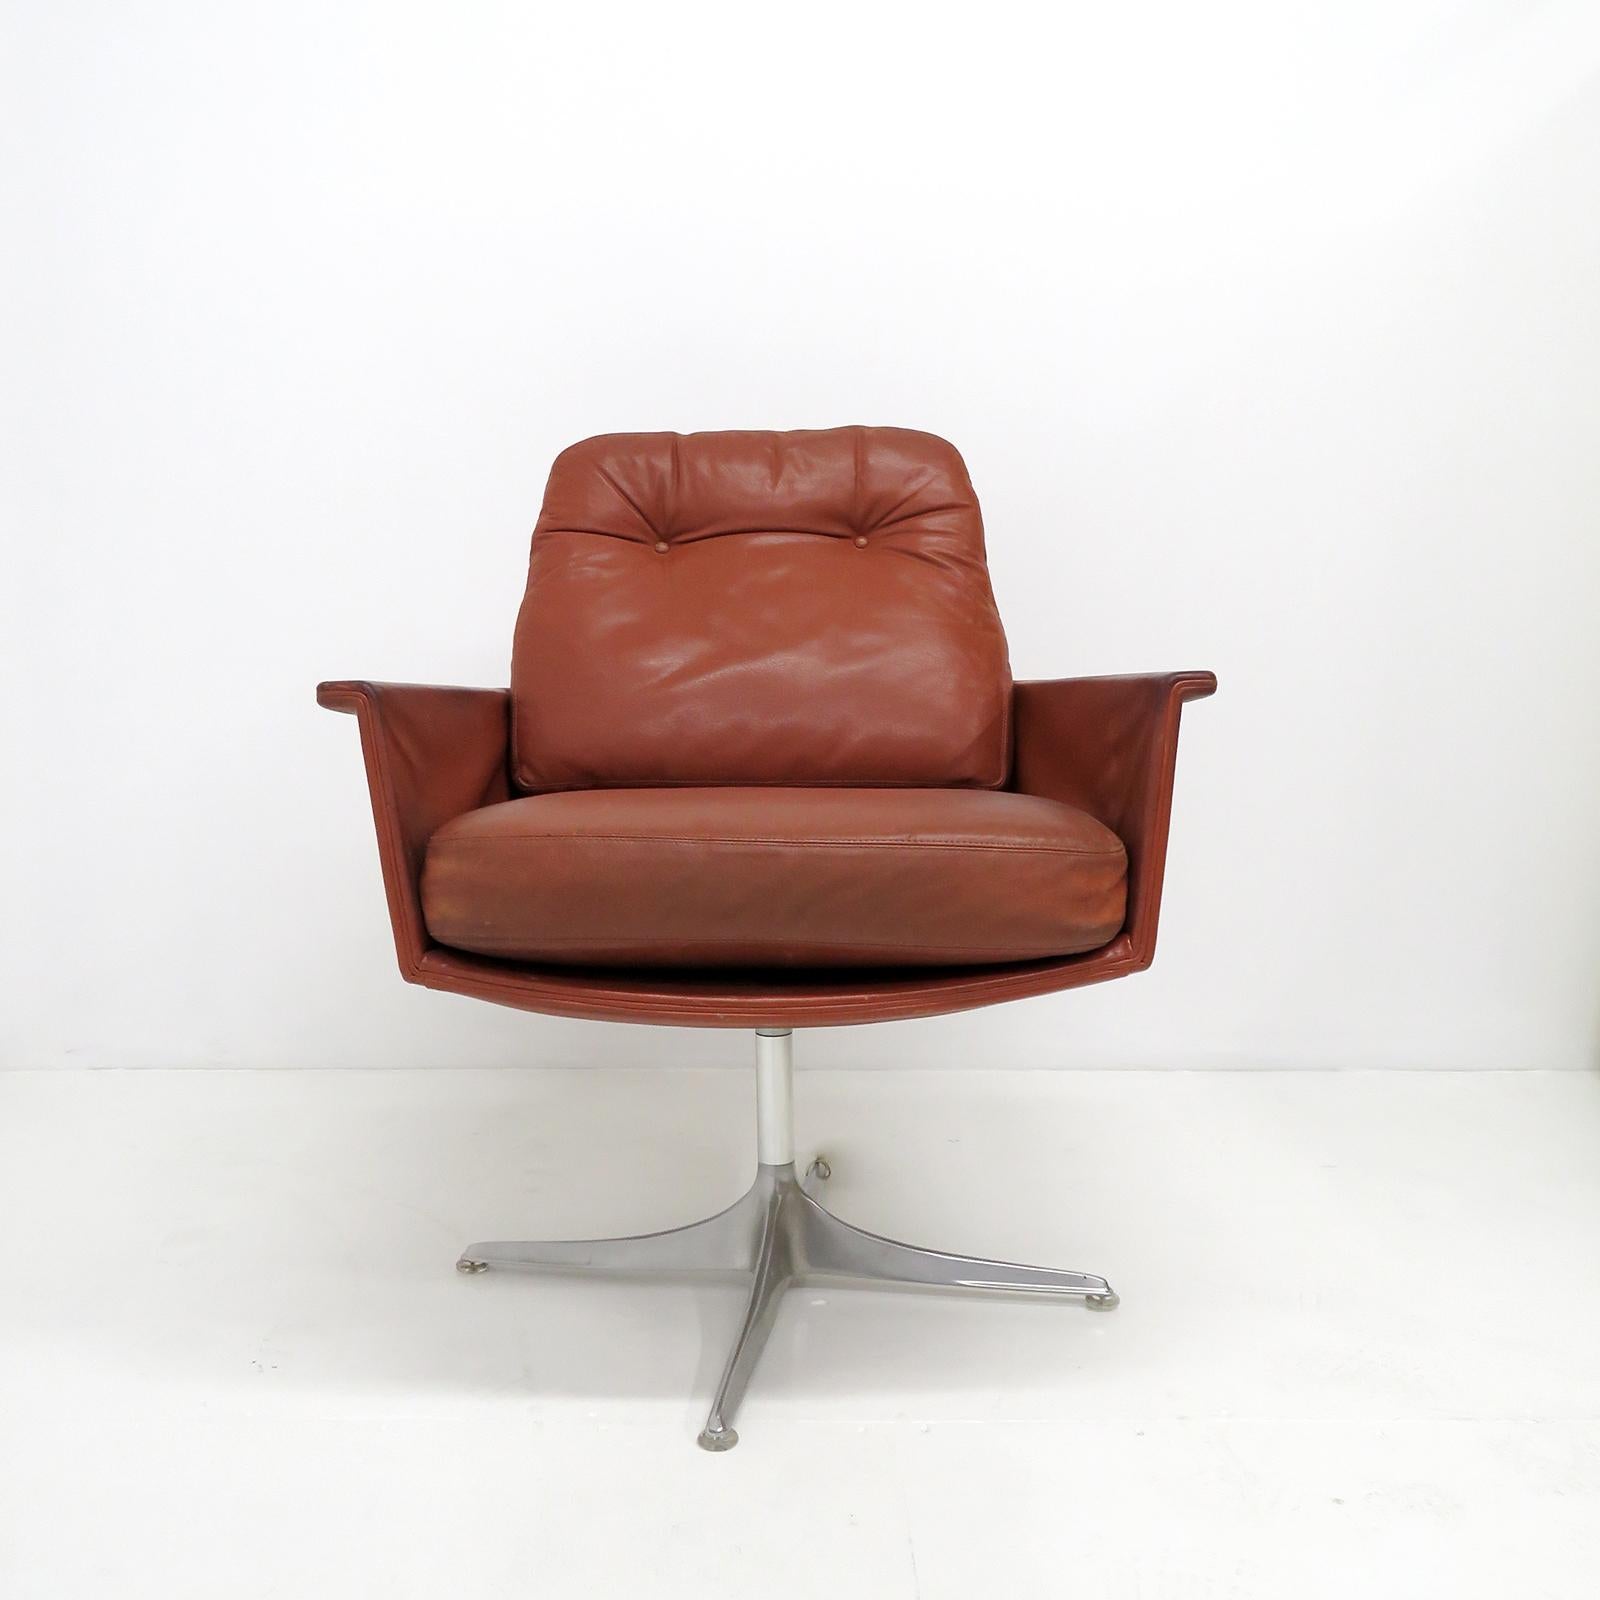 Magnifique paire de chaises longues Sedia de Horst Brüning pour Kill International, coque et coussins libres recouverts de cuir, équipées d'un cadre pivotant avec une base en aluminium à quatre branches. Conçu en 1967 / 1969, produit chez Kill